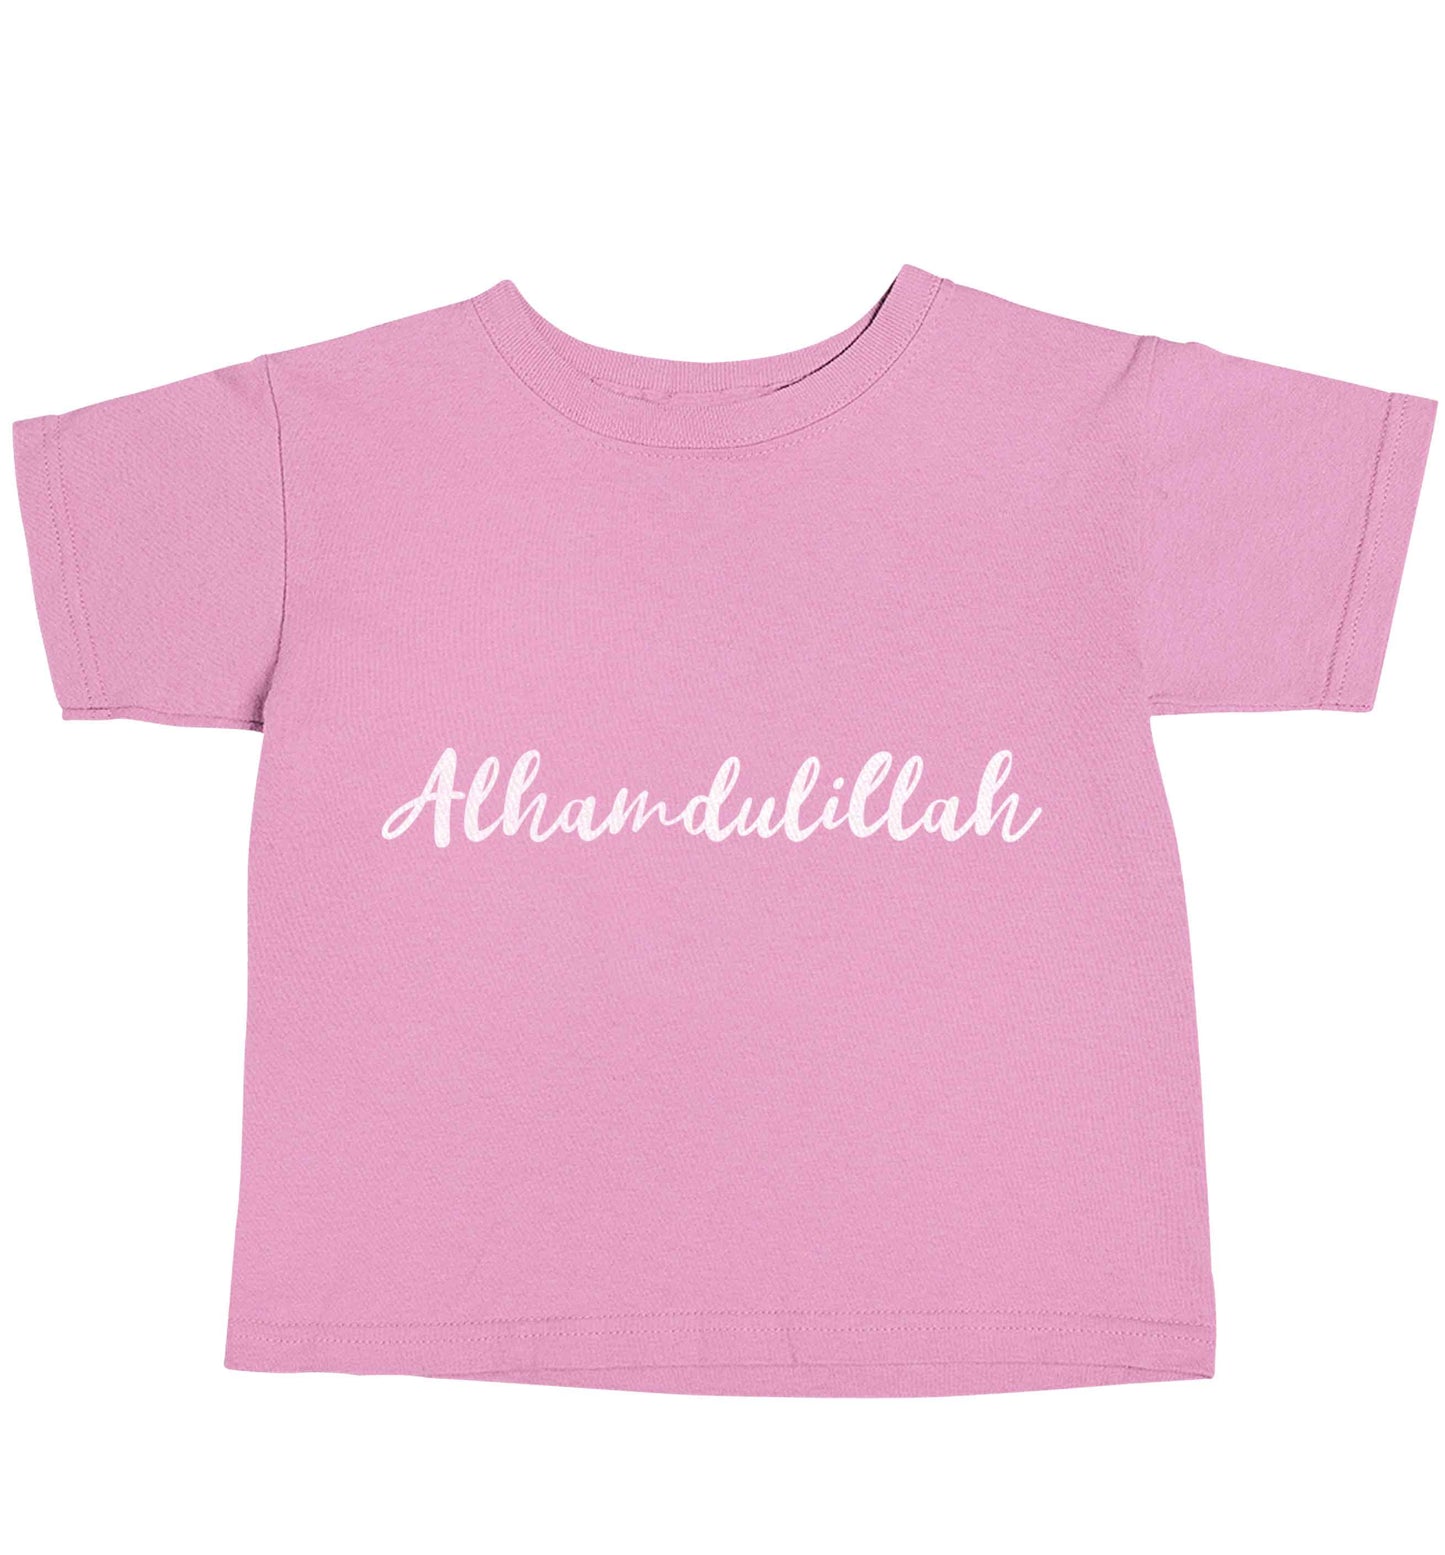 alhamdulillah light pink baby toddler Tshirt 2 Years